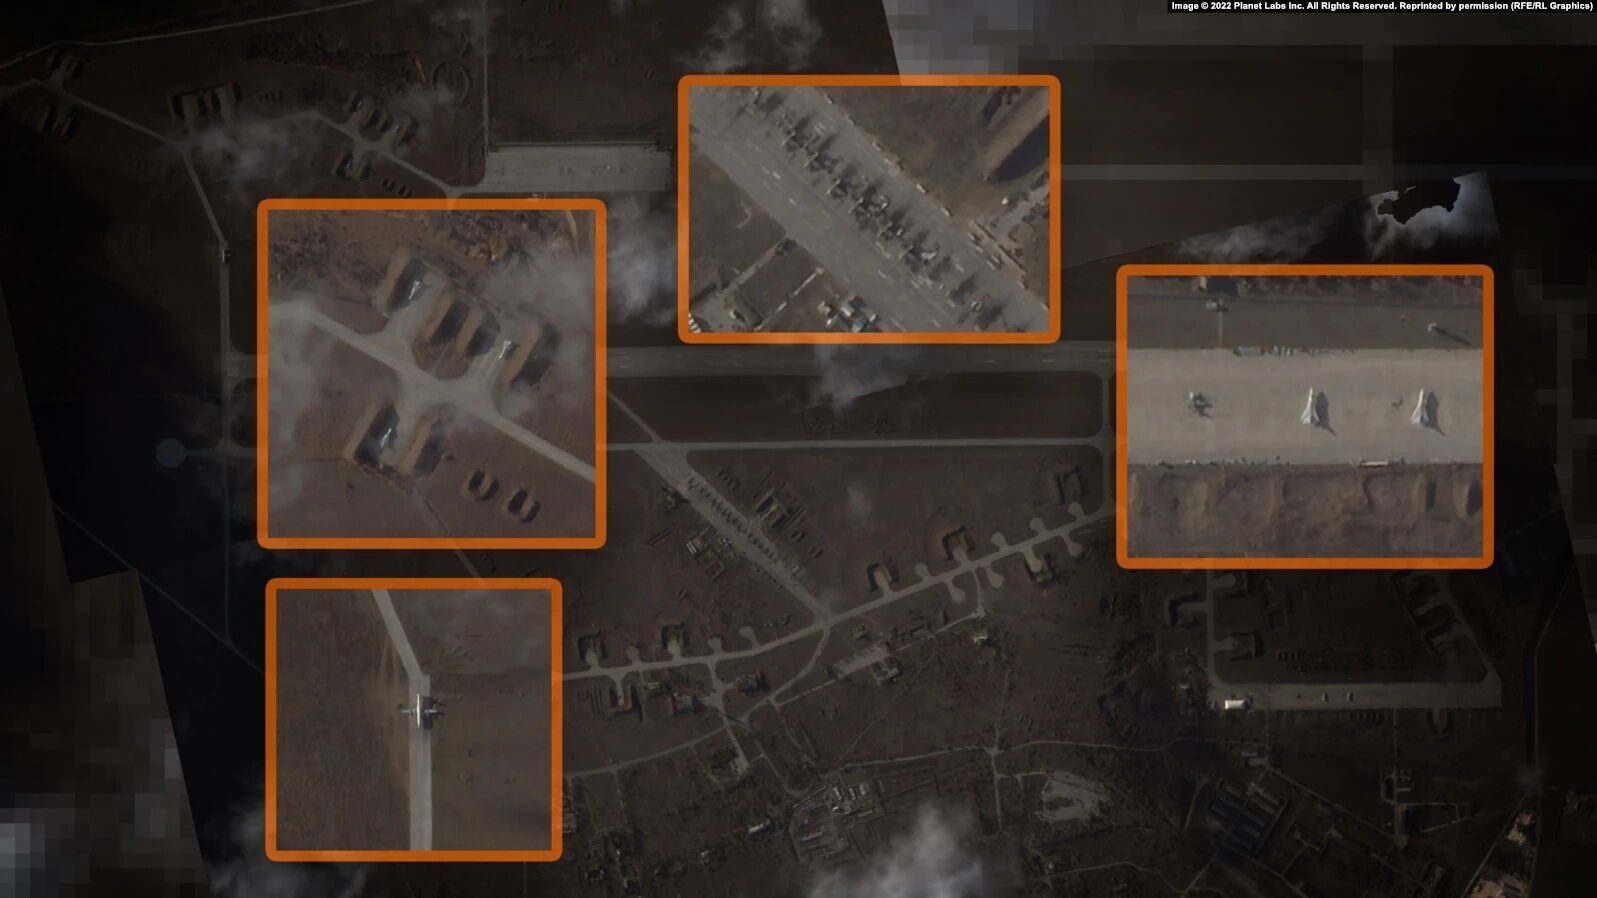 Россия развернула в оккупированном Крыму 10 военных аэродромов и два авиазавода: спутниковые фото